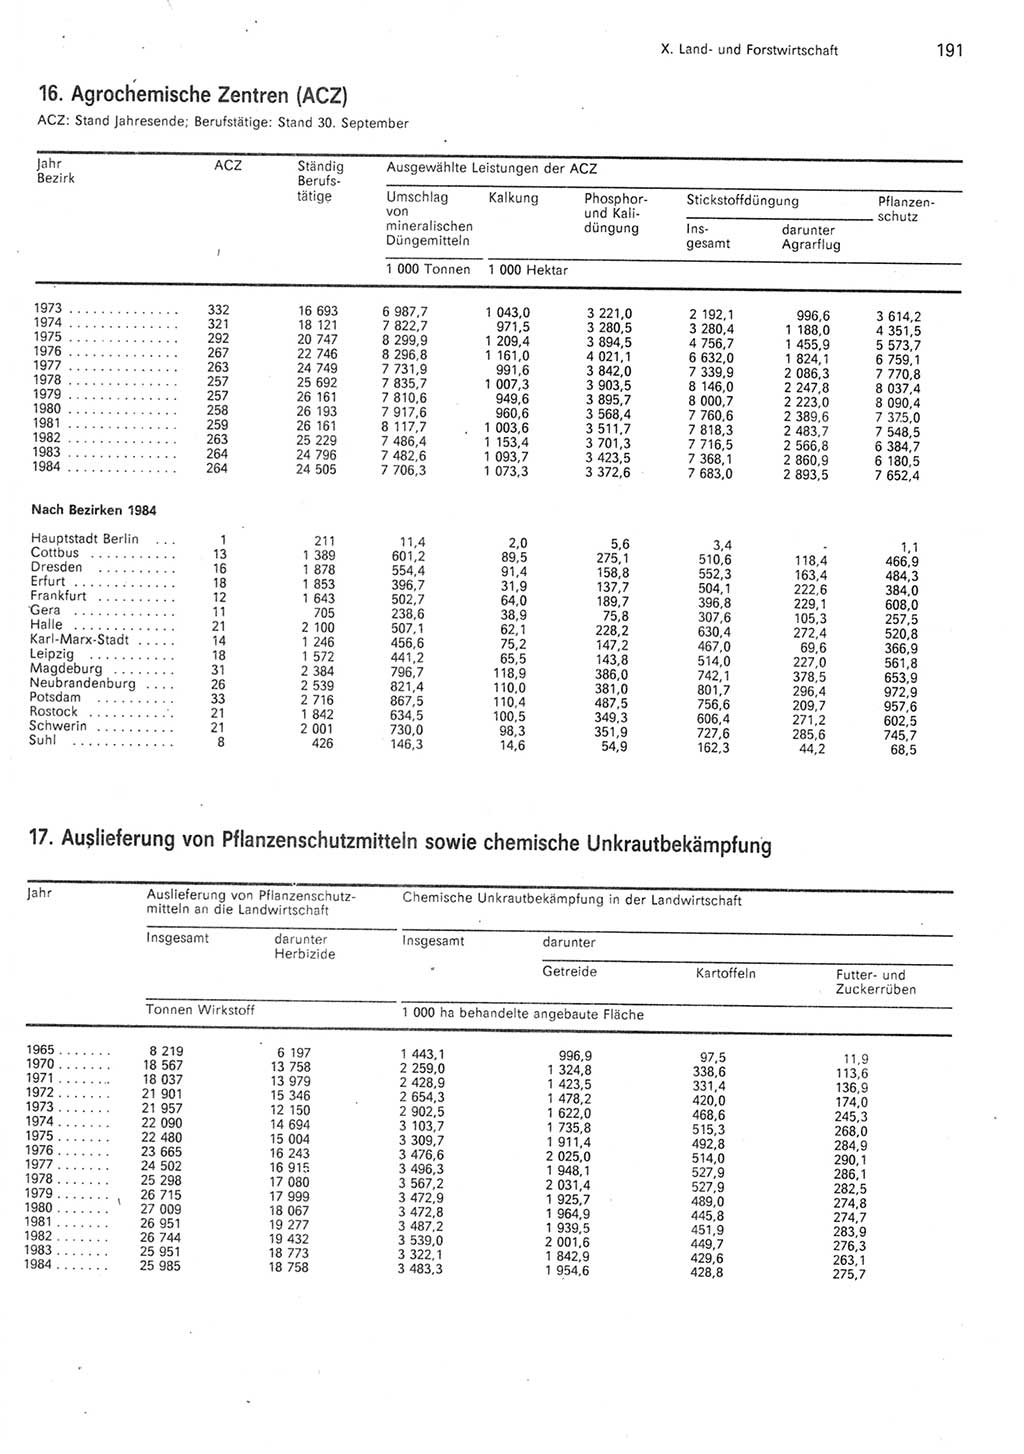 Statistisches Jahrbuch der Deutschen Demokratischen Republik (DDR) 1985, Seite 191 (Stat. Jb. DDR 1985, S. 191)